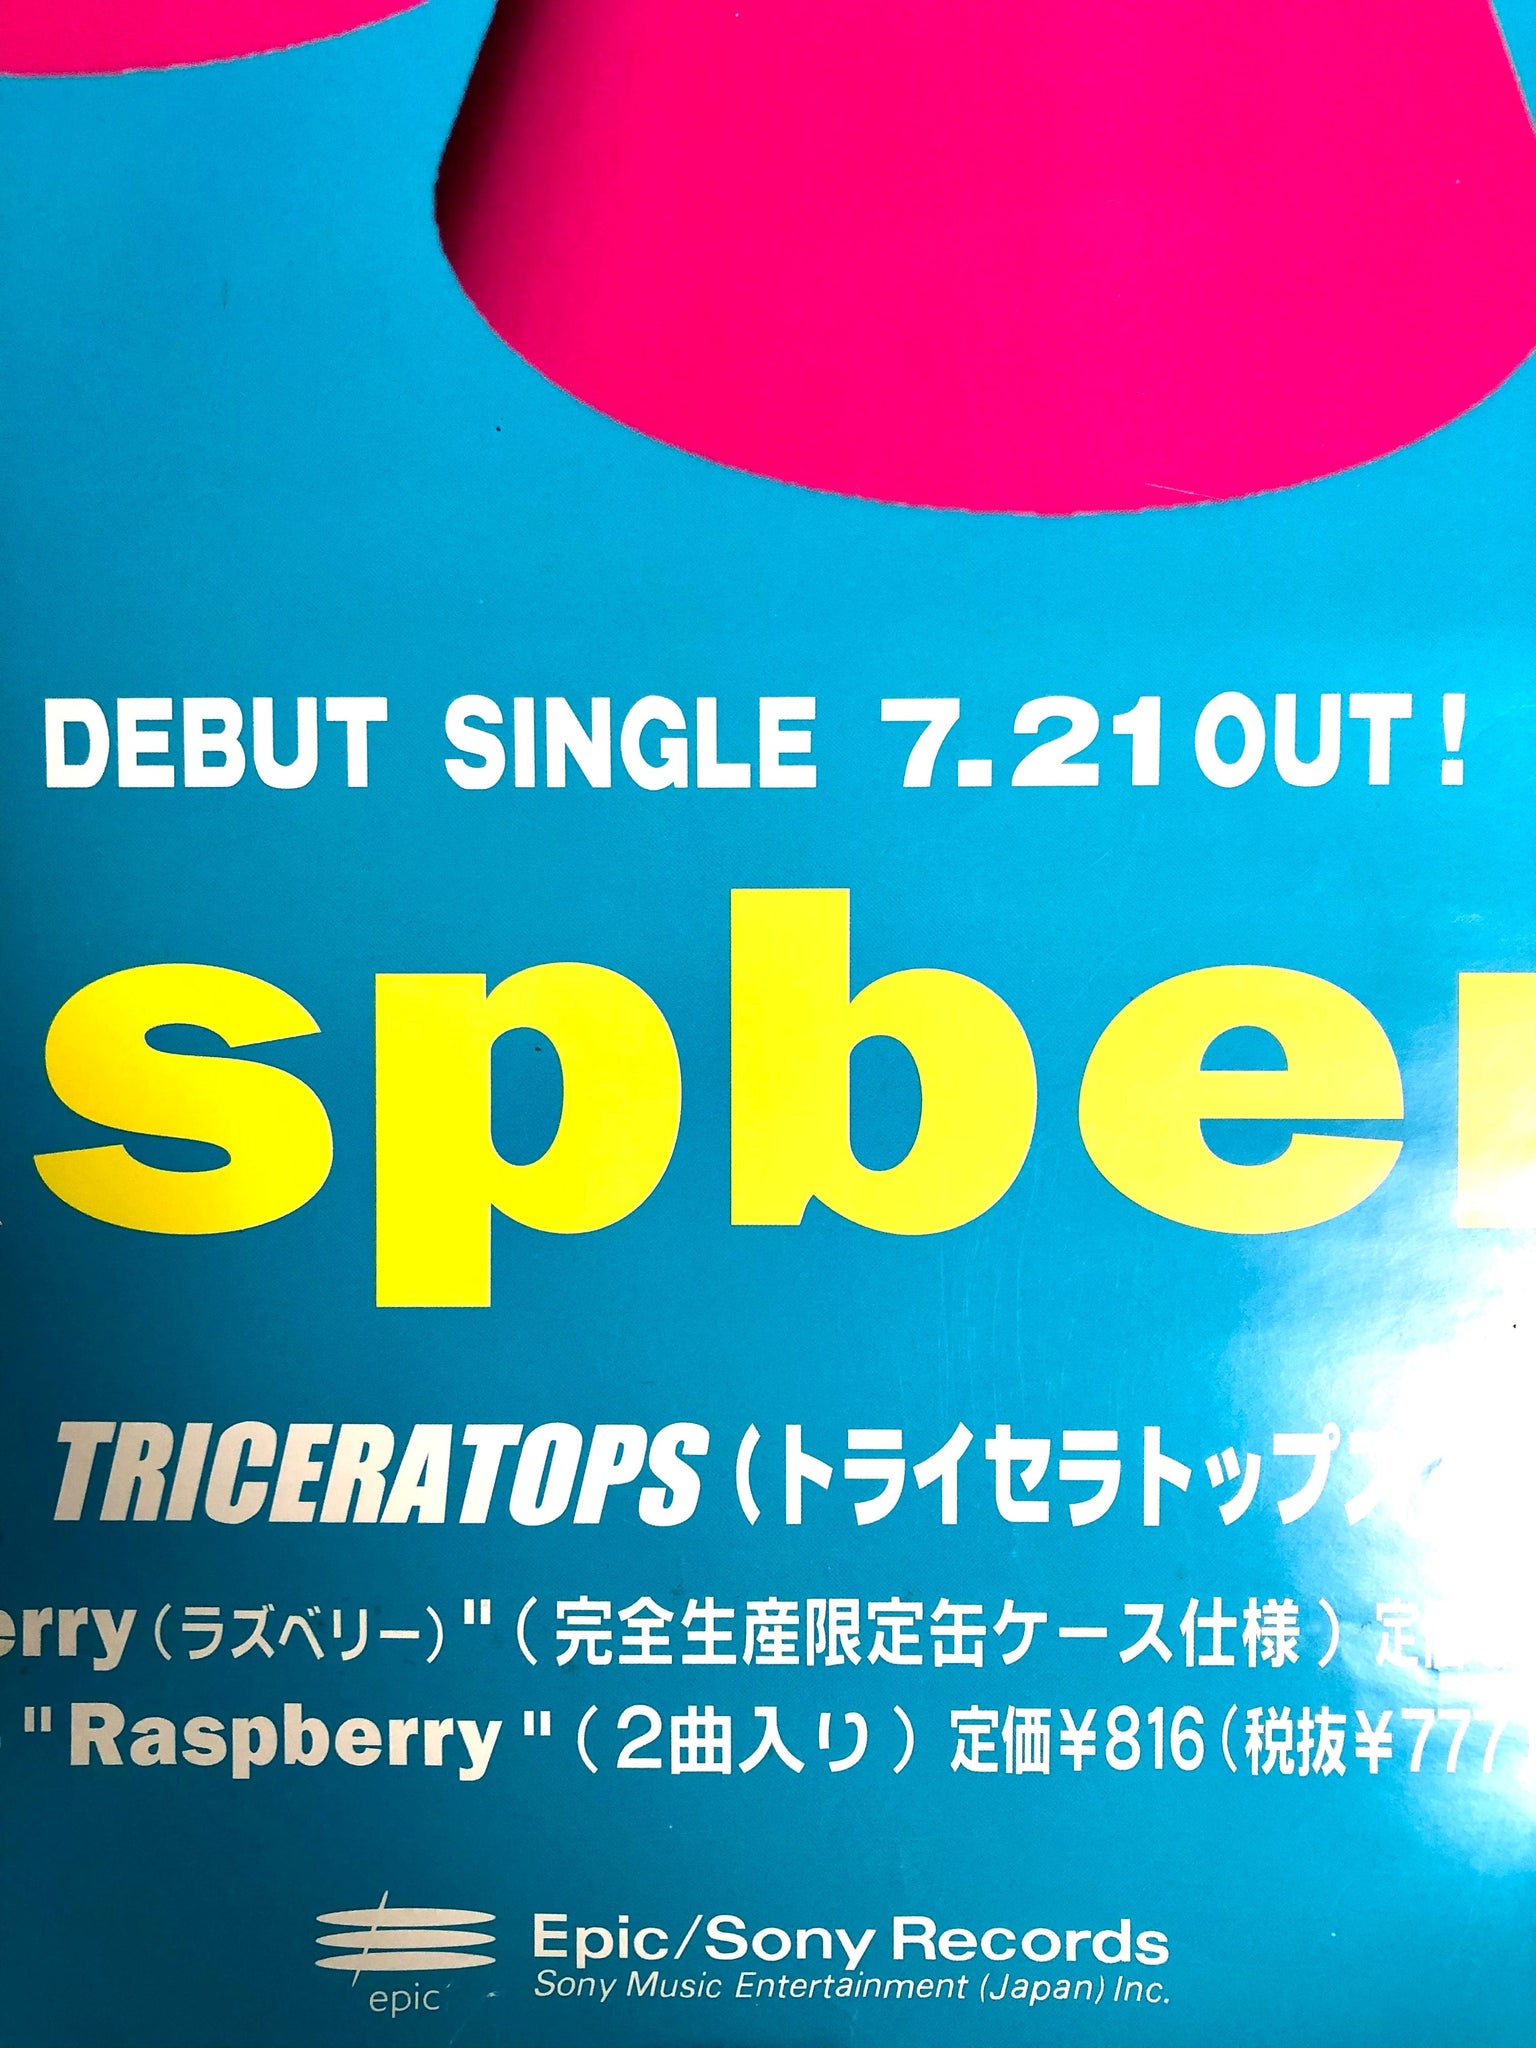 Triceratops - Raspberry, 1998